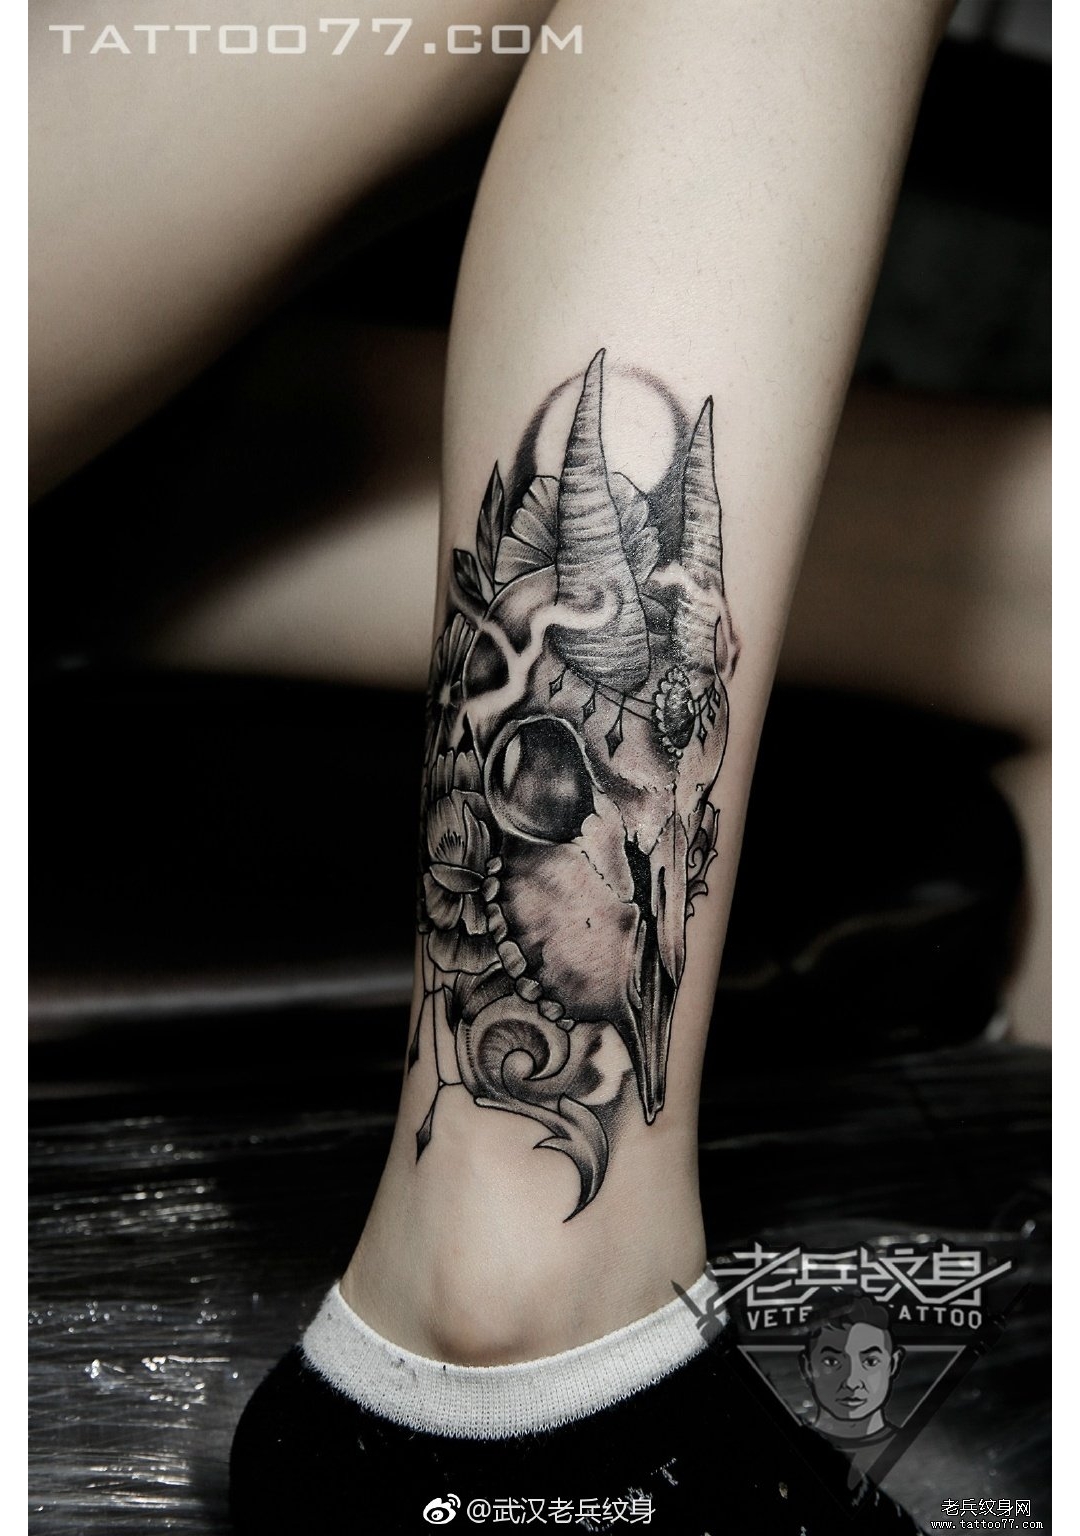 武汉女纹身师打造的小腿羊骷髅纹身图案作品